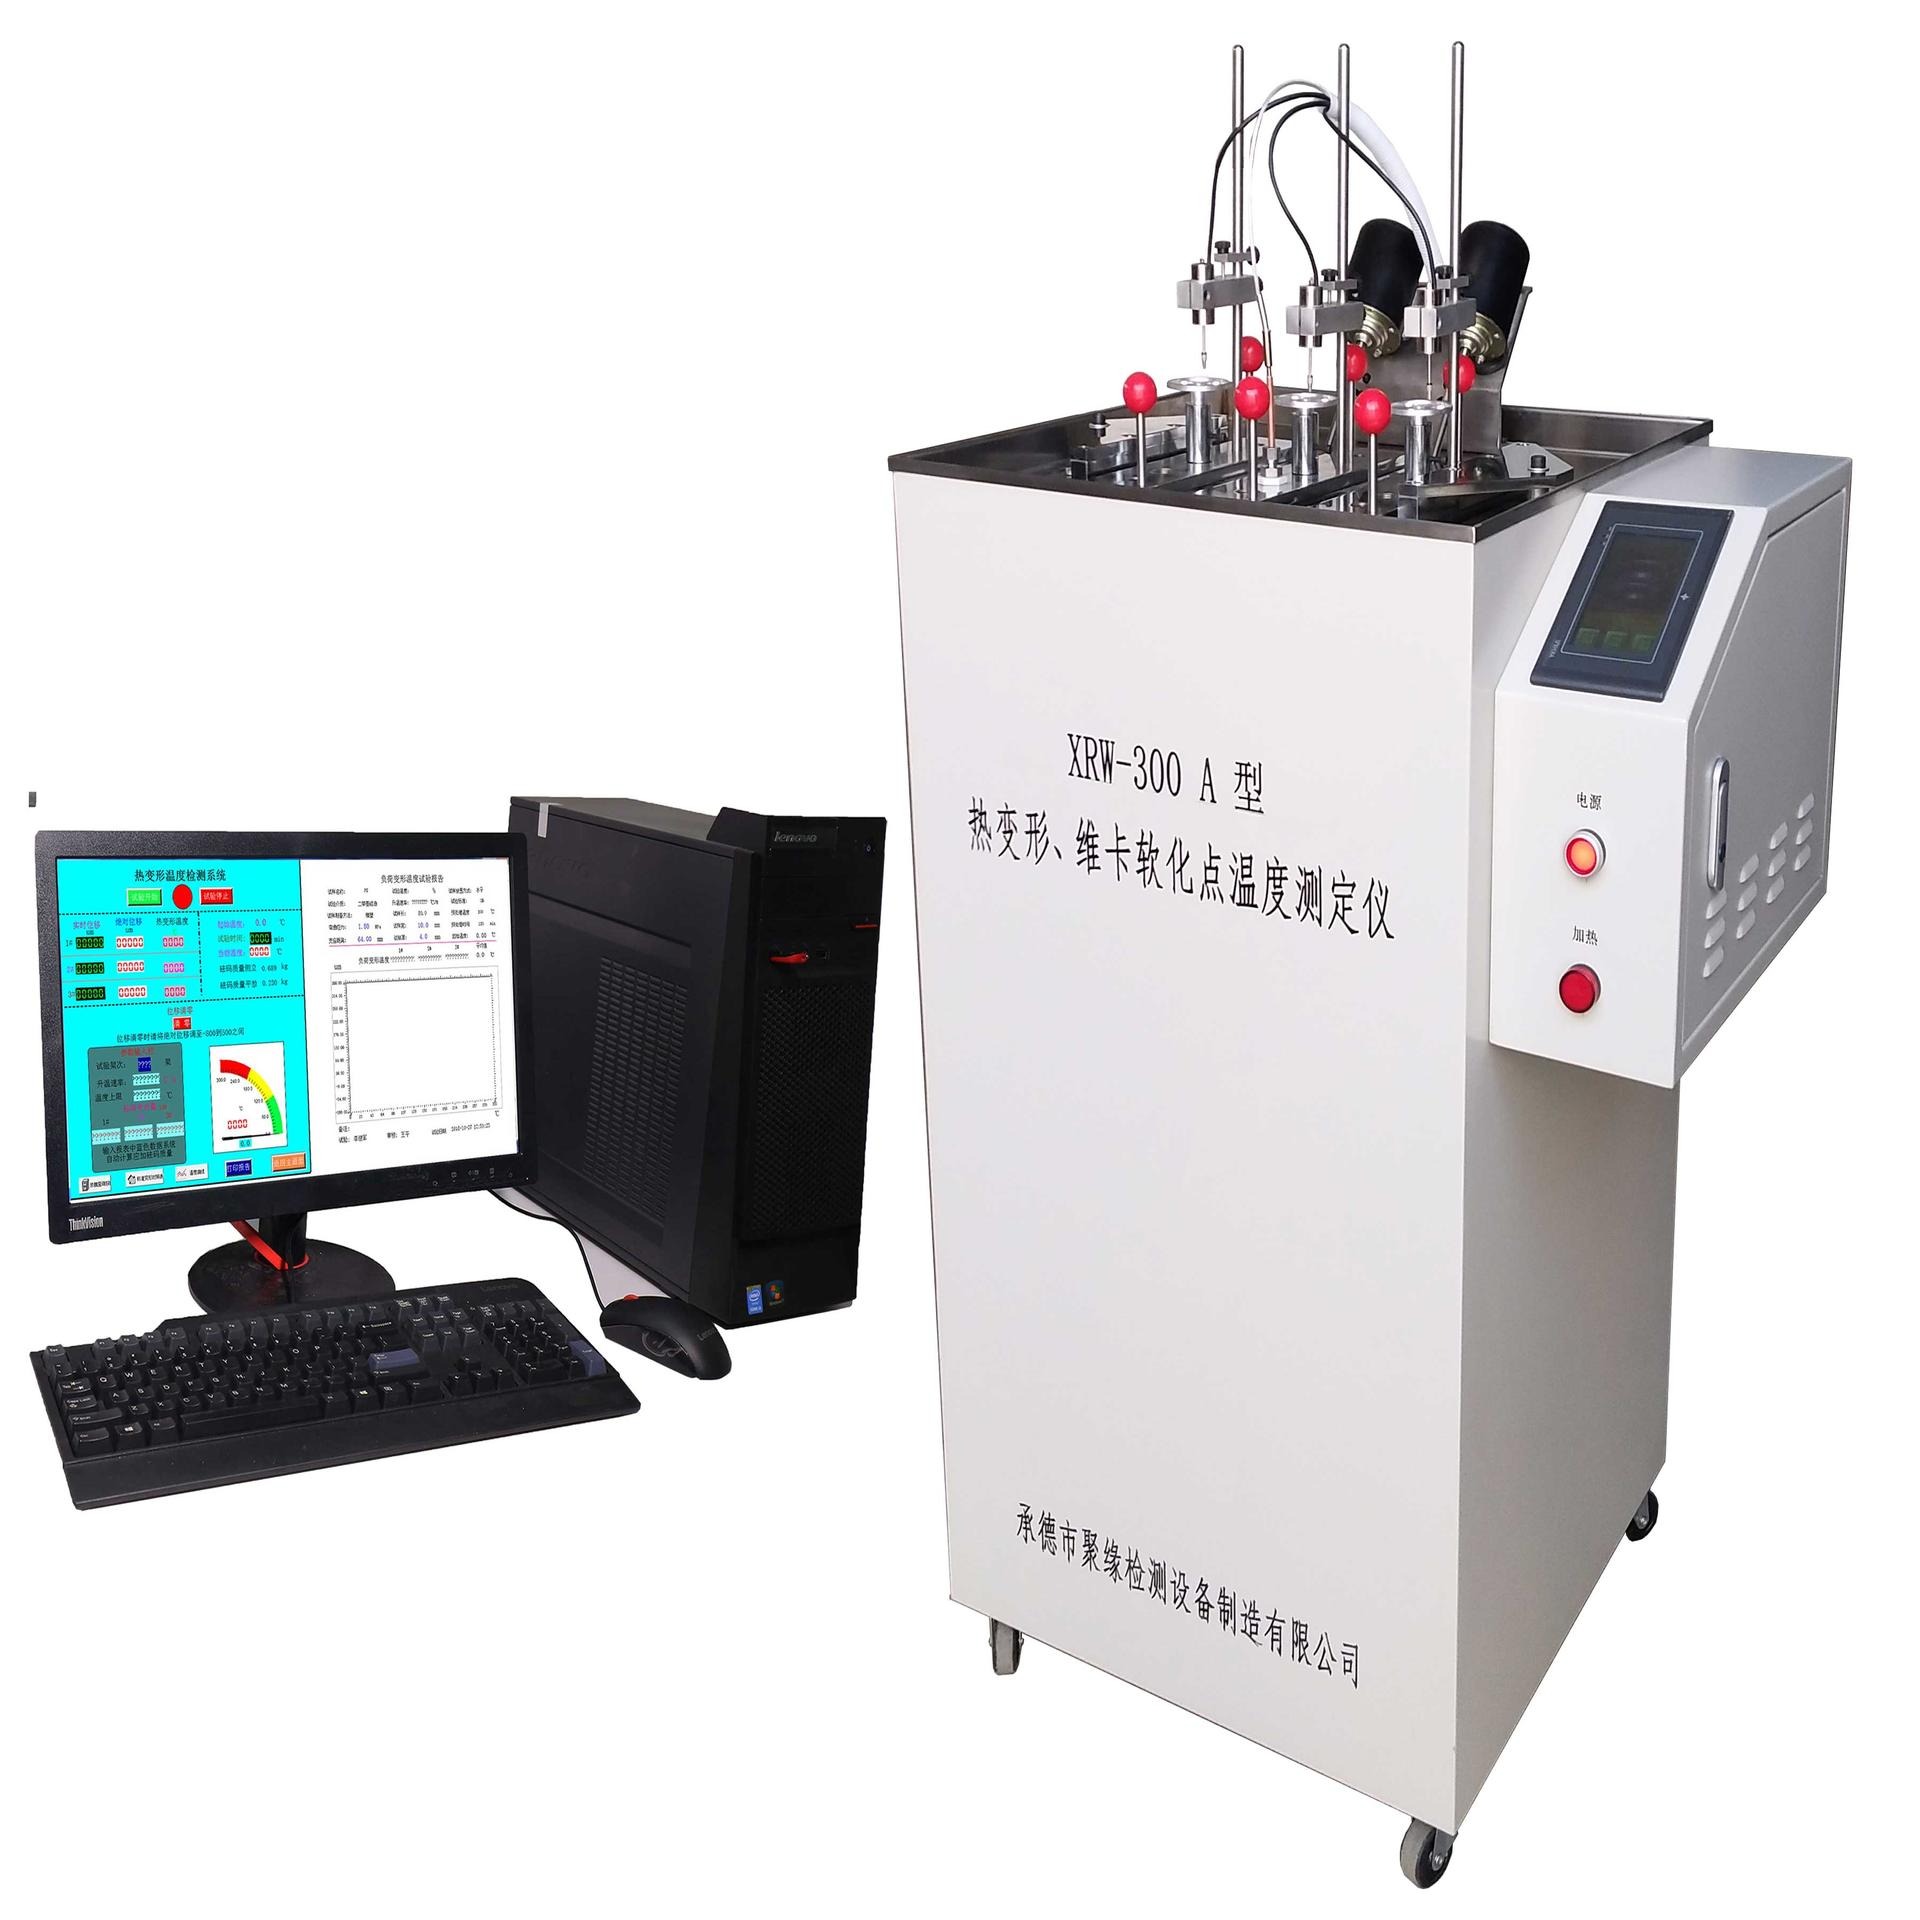 XRW-300A维卡温度测定仪   热变形温度测定仪 热变形试验机 选承德聚缘